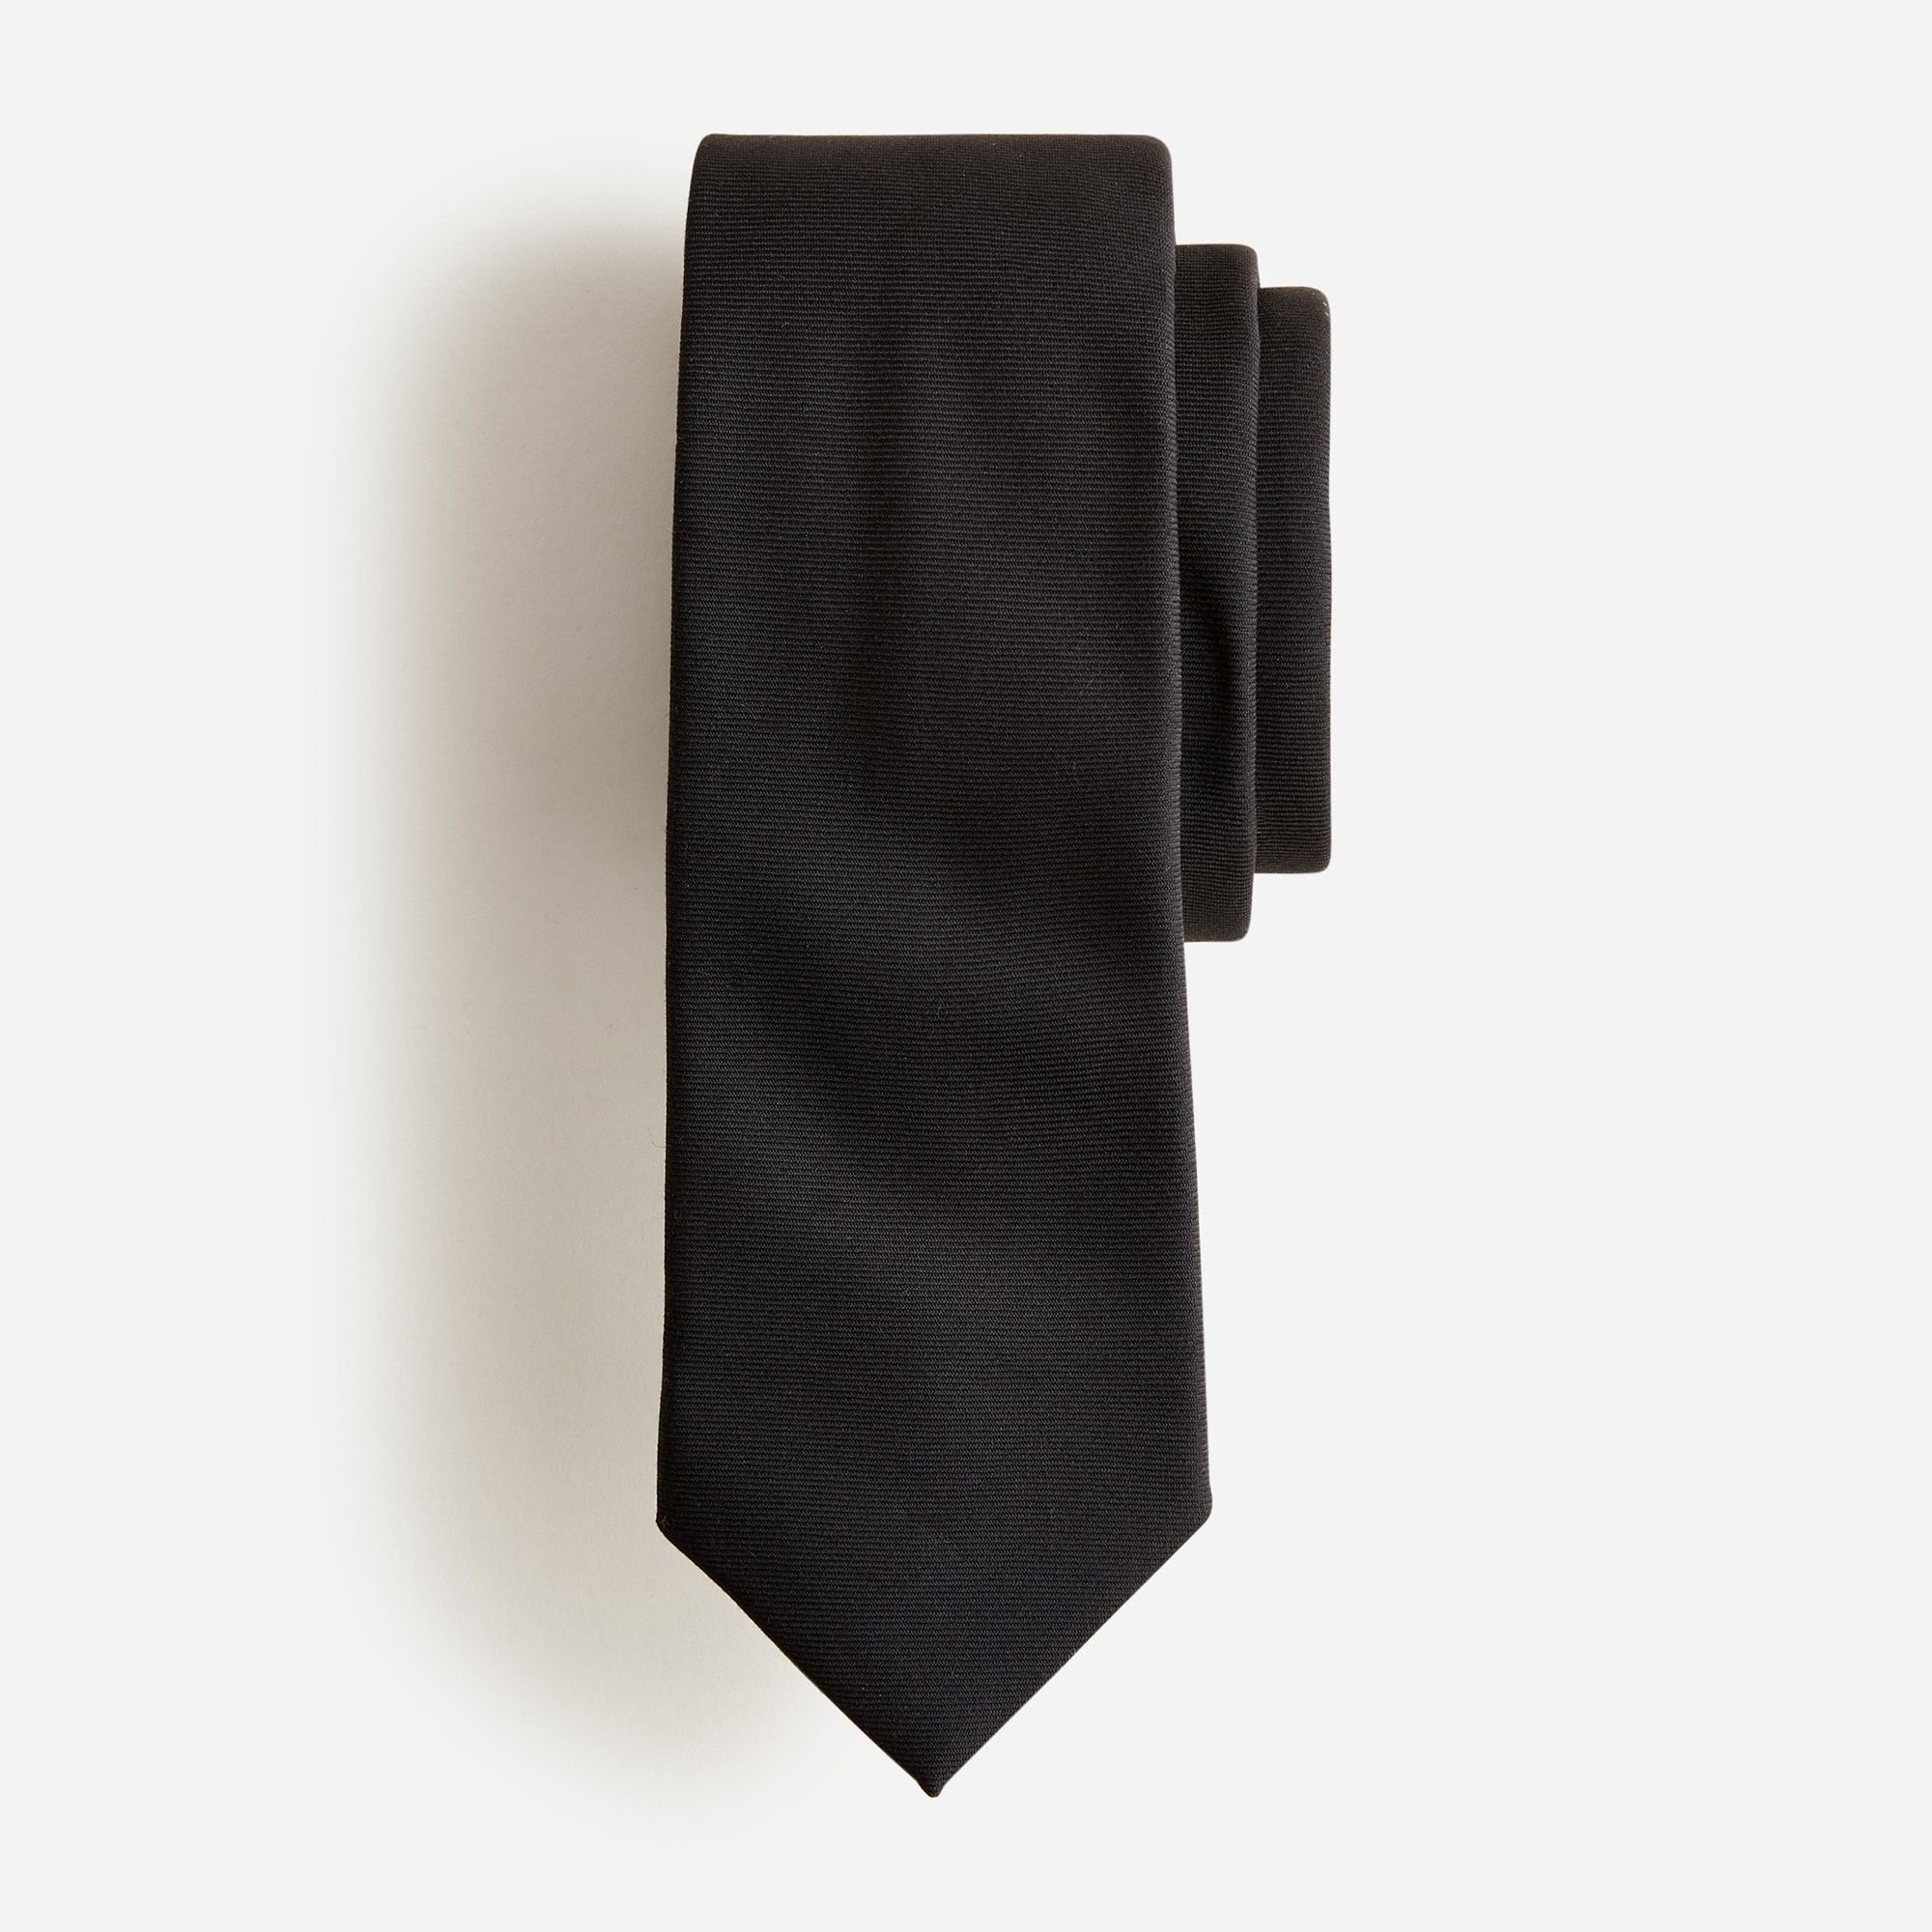 Jcrew American wool tie in black